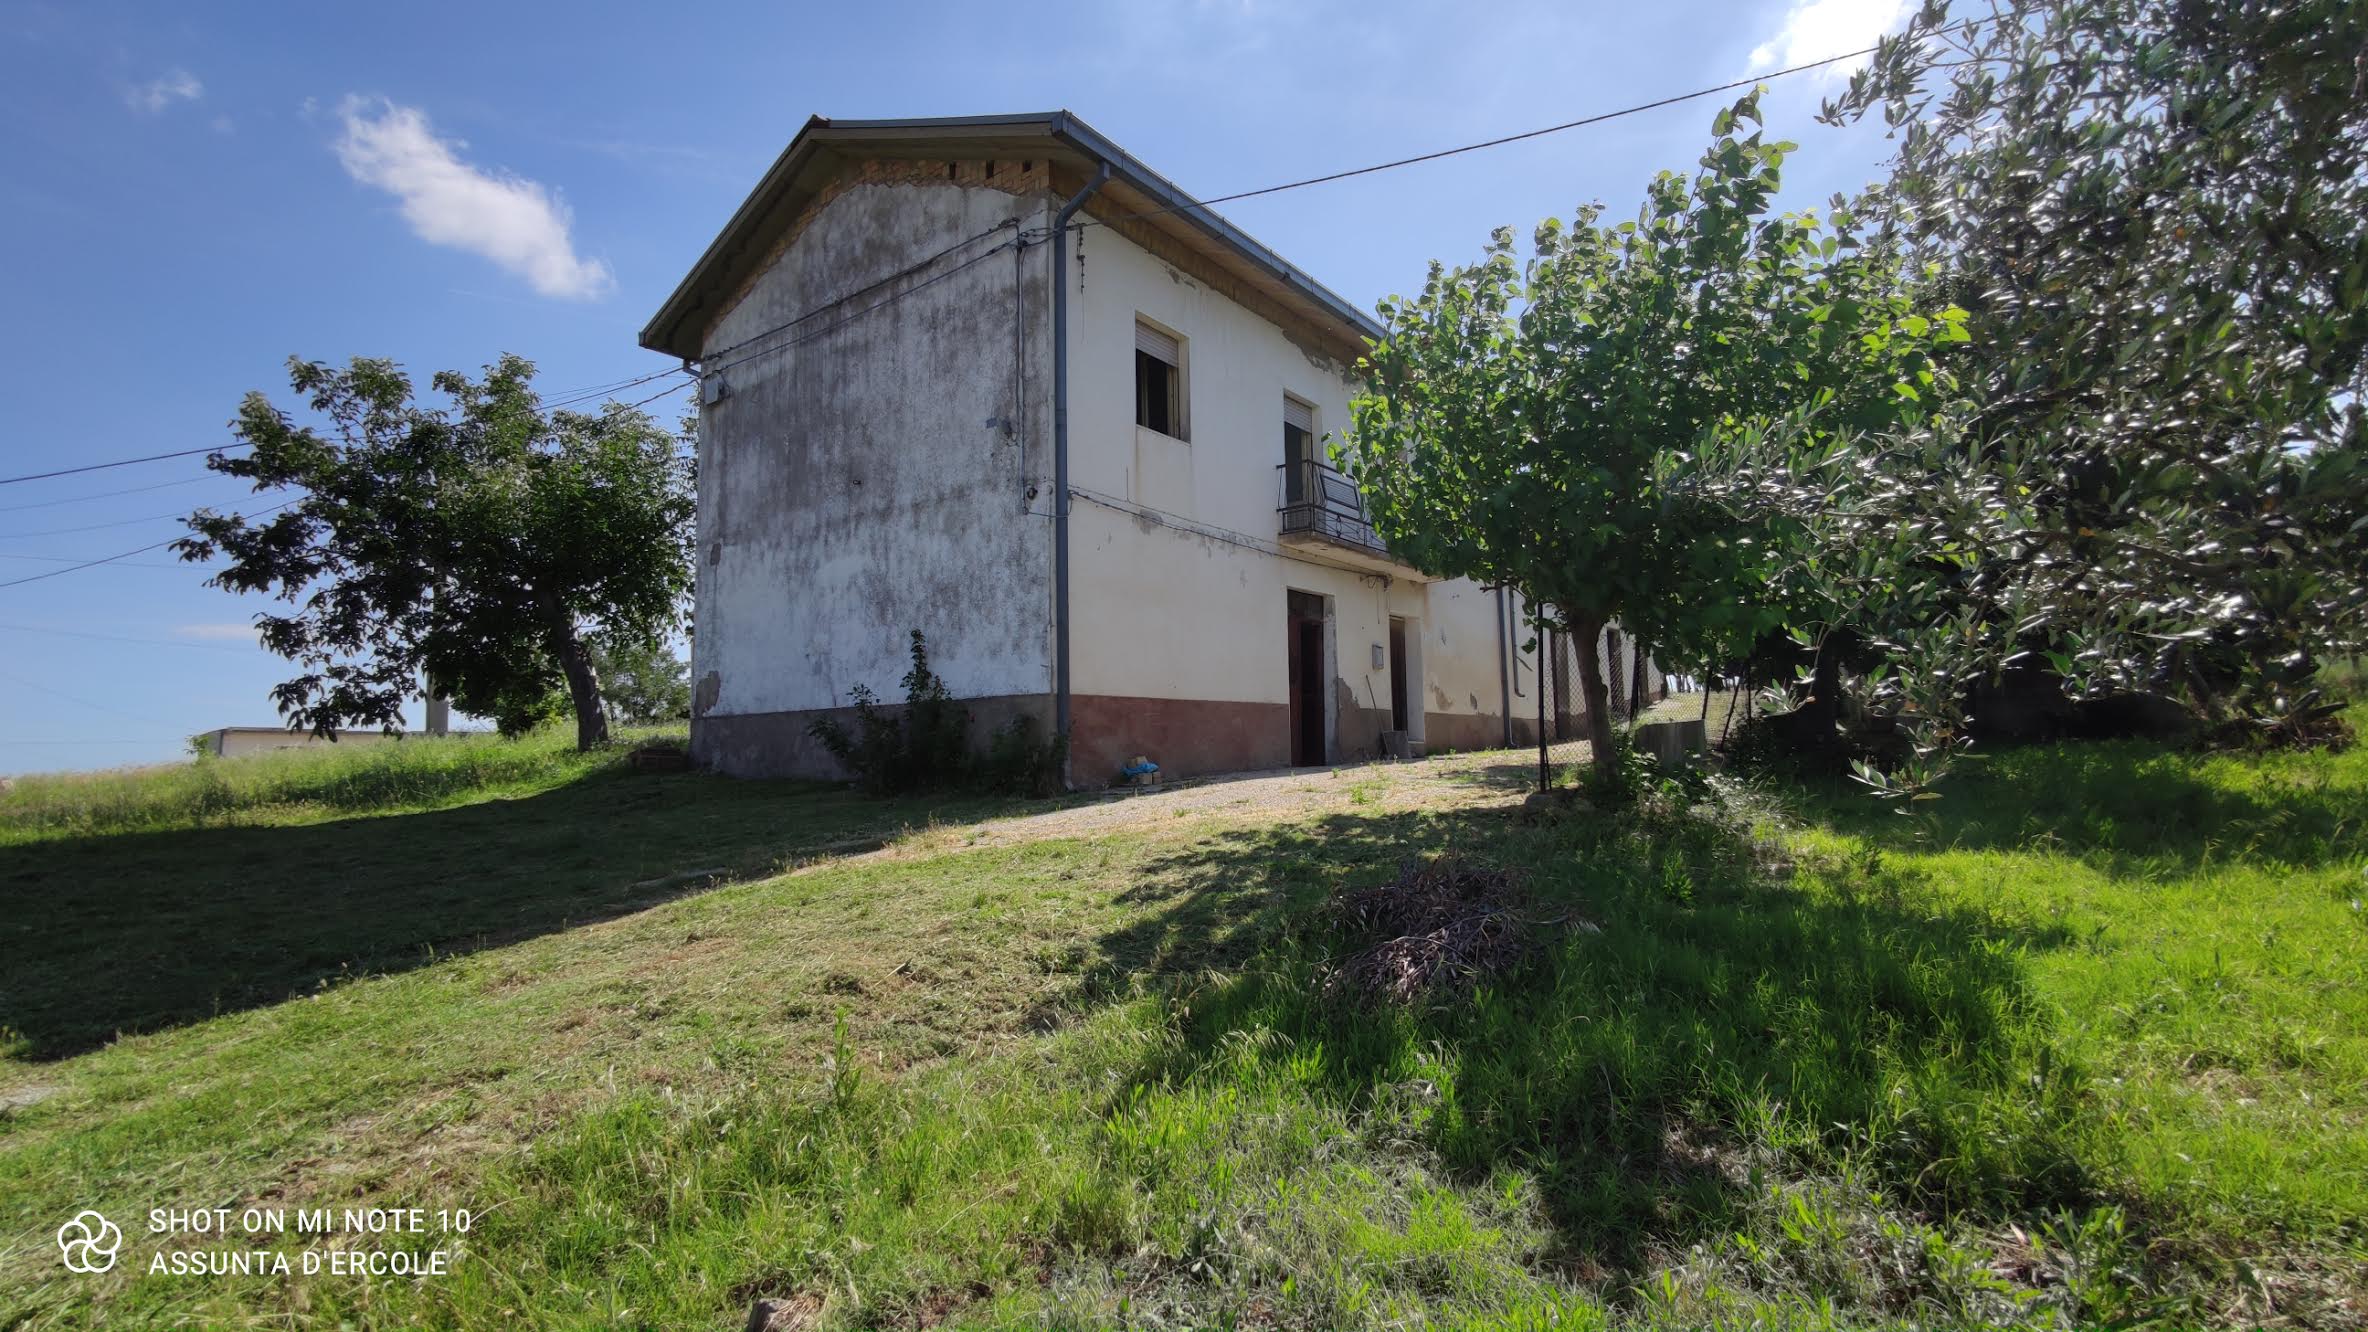 rif 1360 Casalanguida (CH) – Casolare e terreno in collina – € 75000